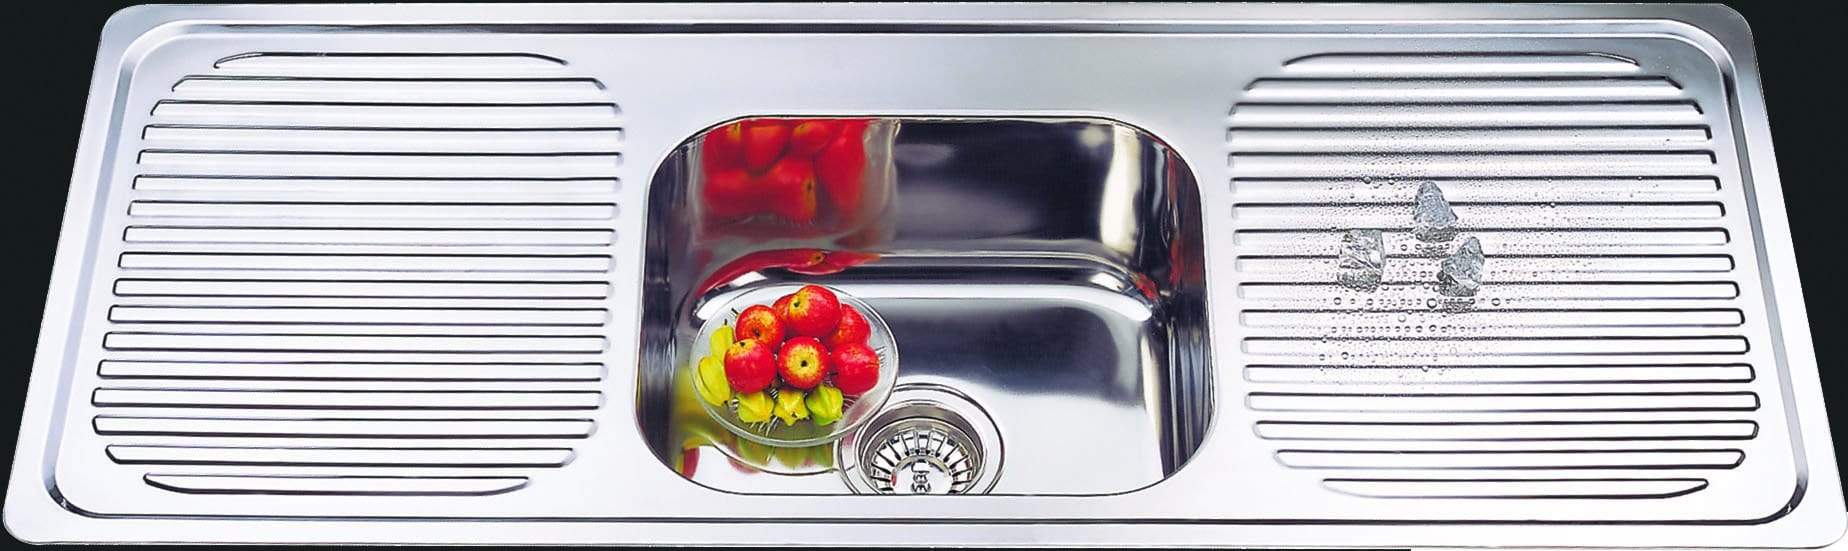 Bad und Kuche Kitchen Sink Single Bowl, Double Drainer BK446S